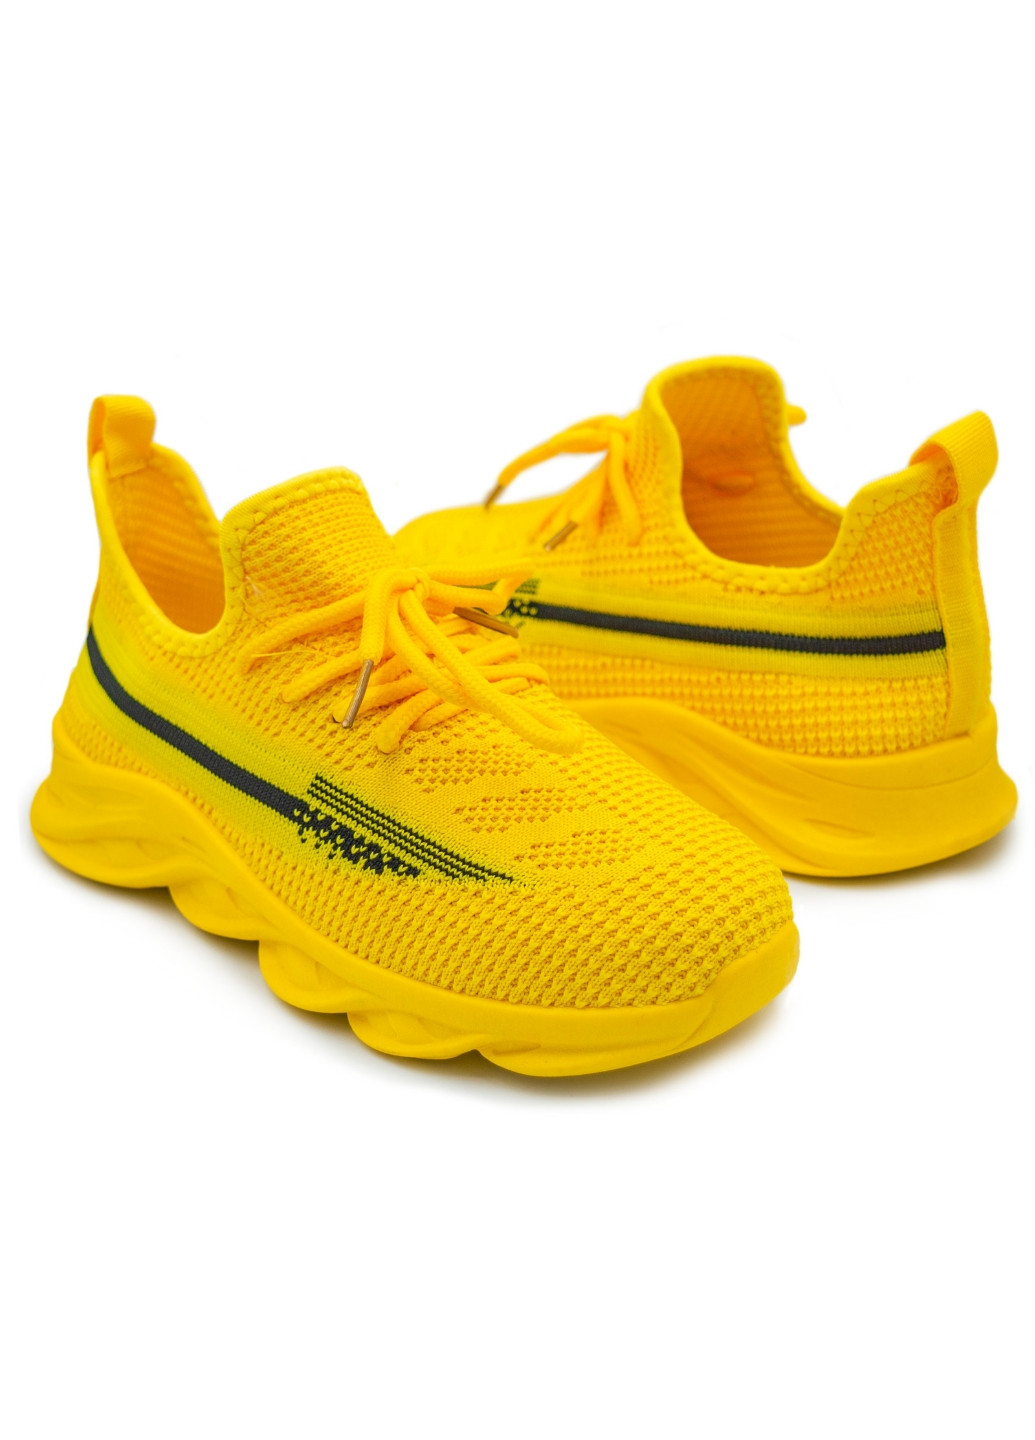 Жовті всесезонні дитячі кросівки для дівчинки Lilin Shoes